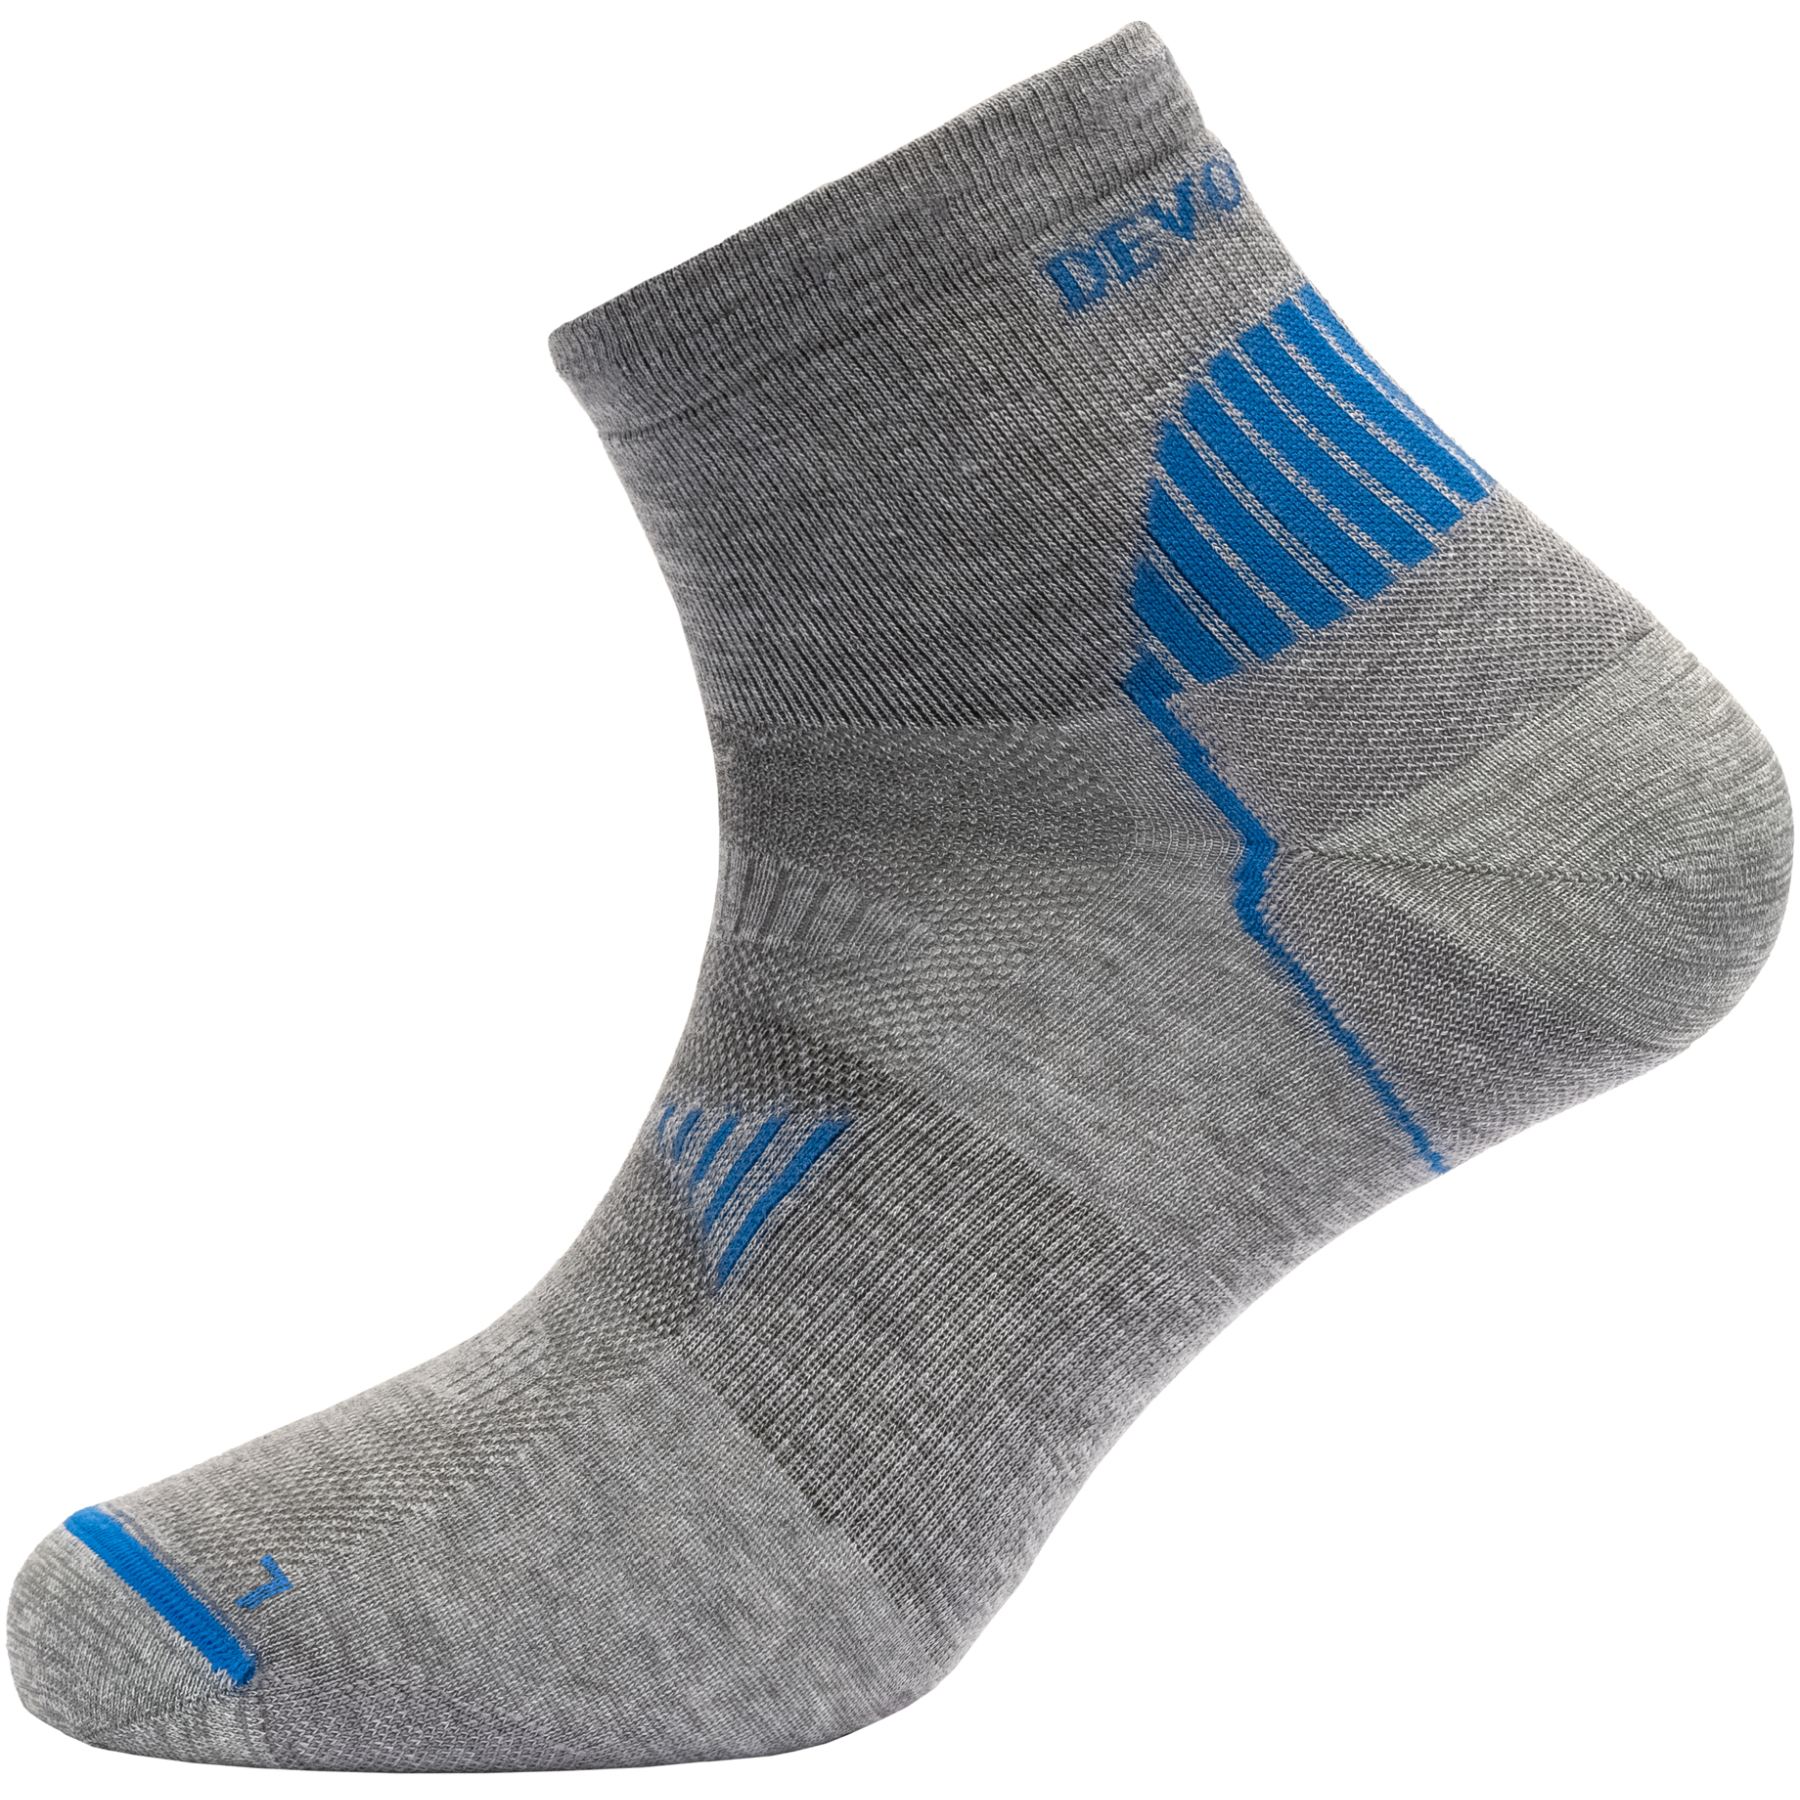 Produktbild von Devold Running Merino Socken knöchelhoch - 770A Grey Melange